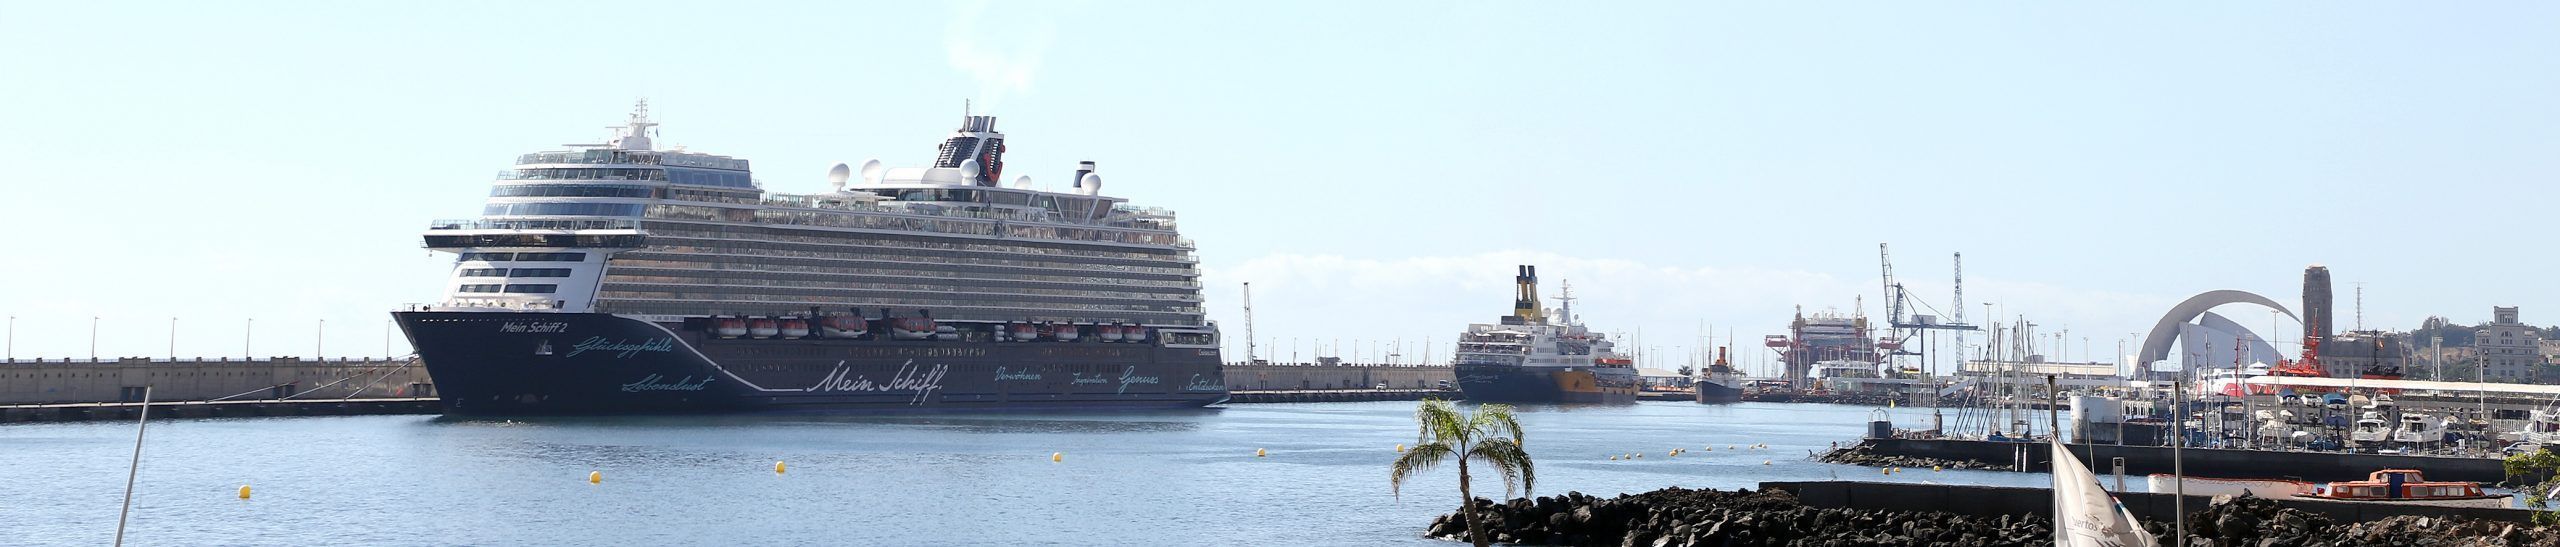 El crucero Mein Schiff 2 en el Puerto de Tenerife